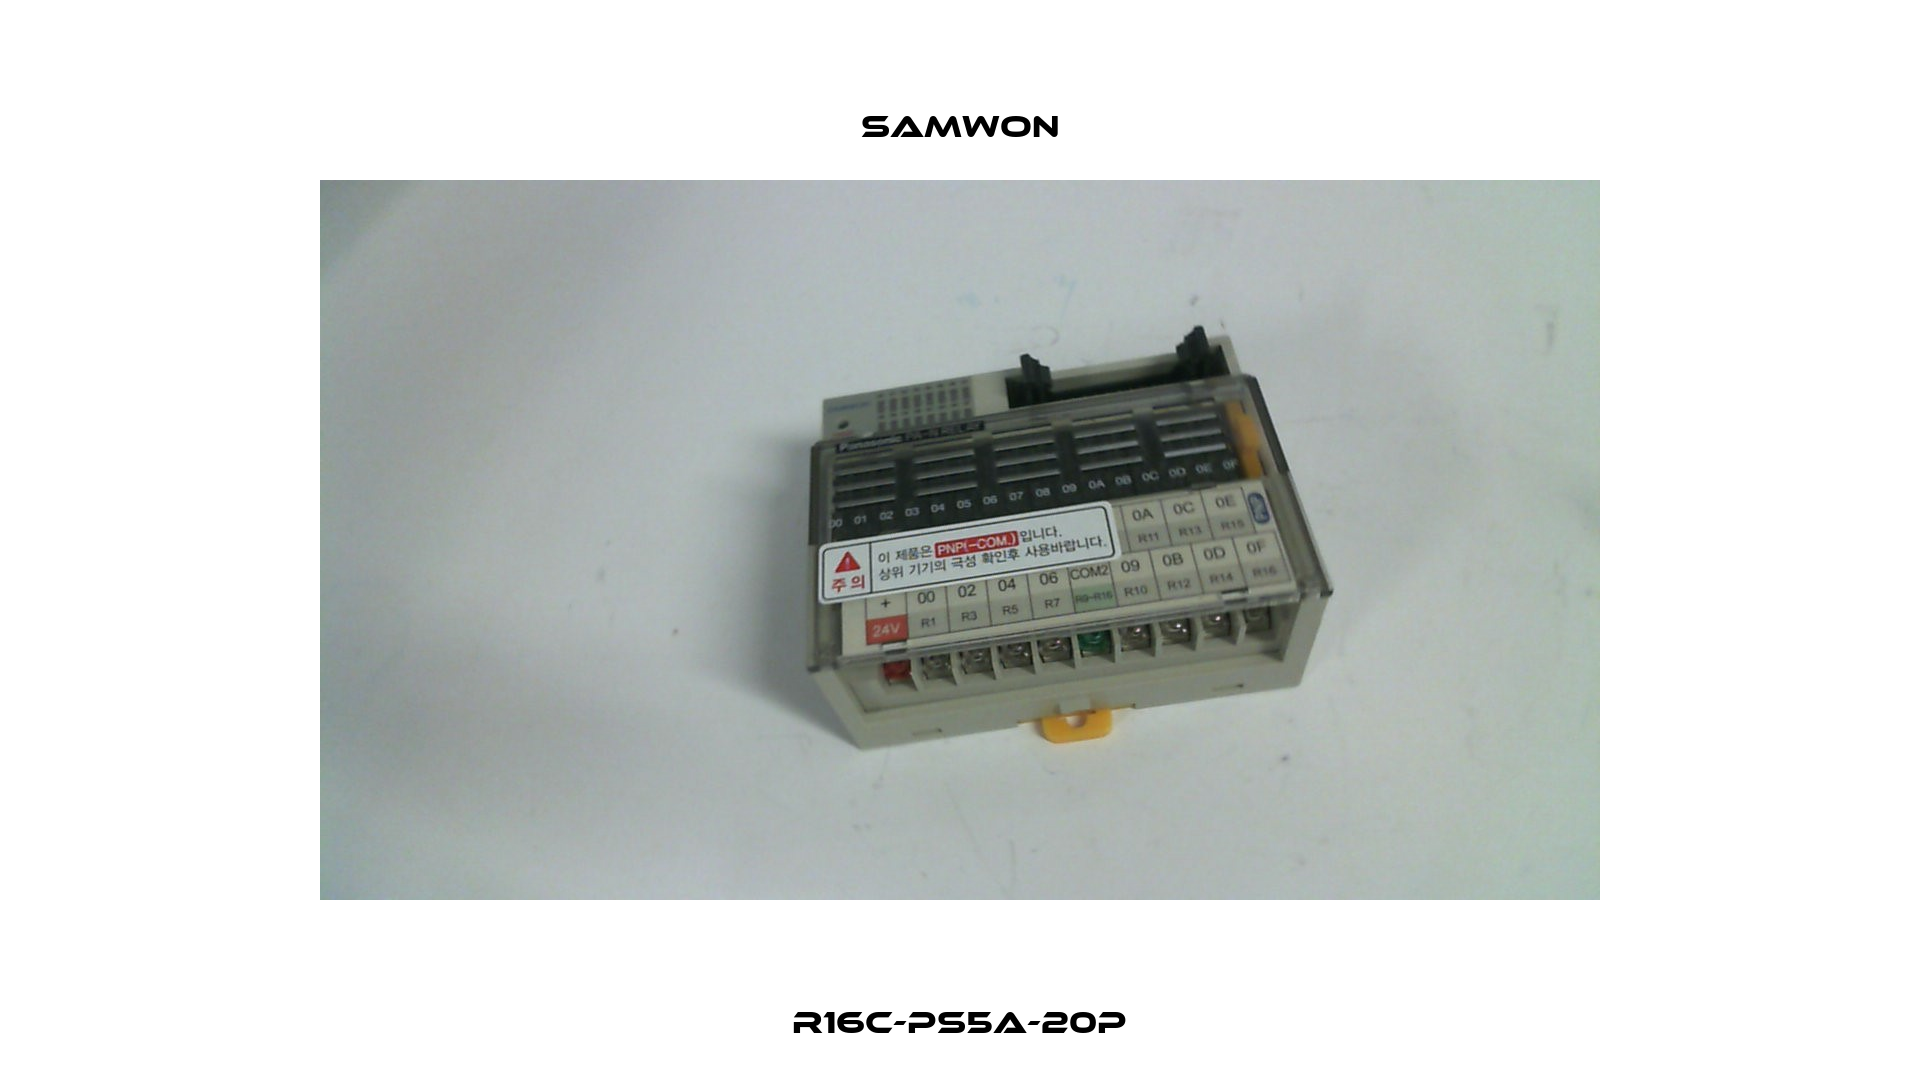 R16C-PS5A-20P Samwon